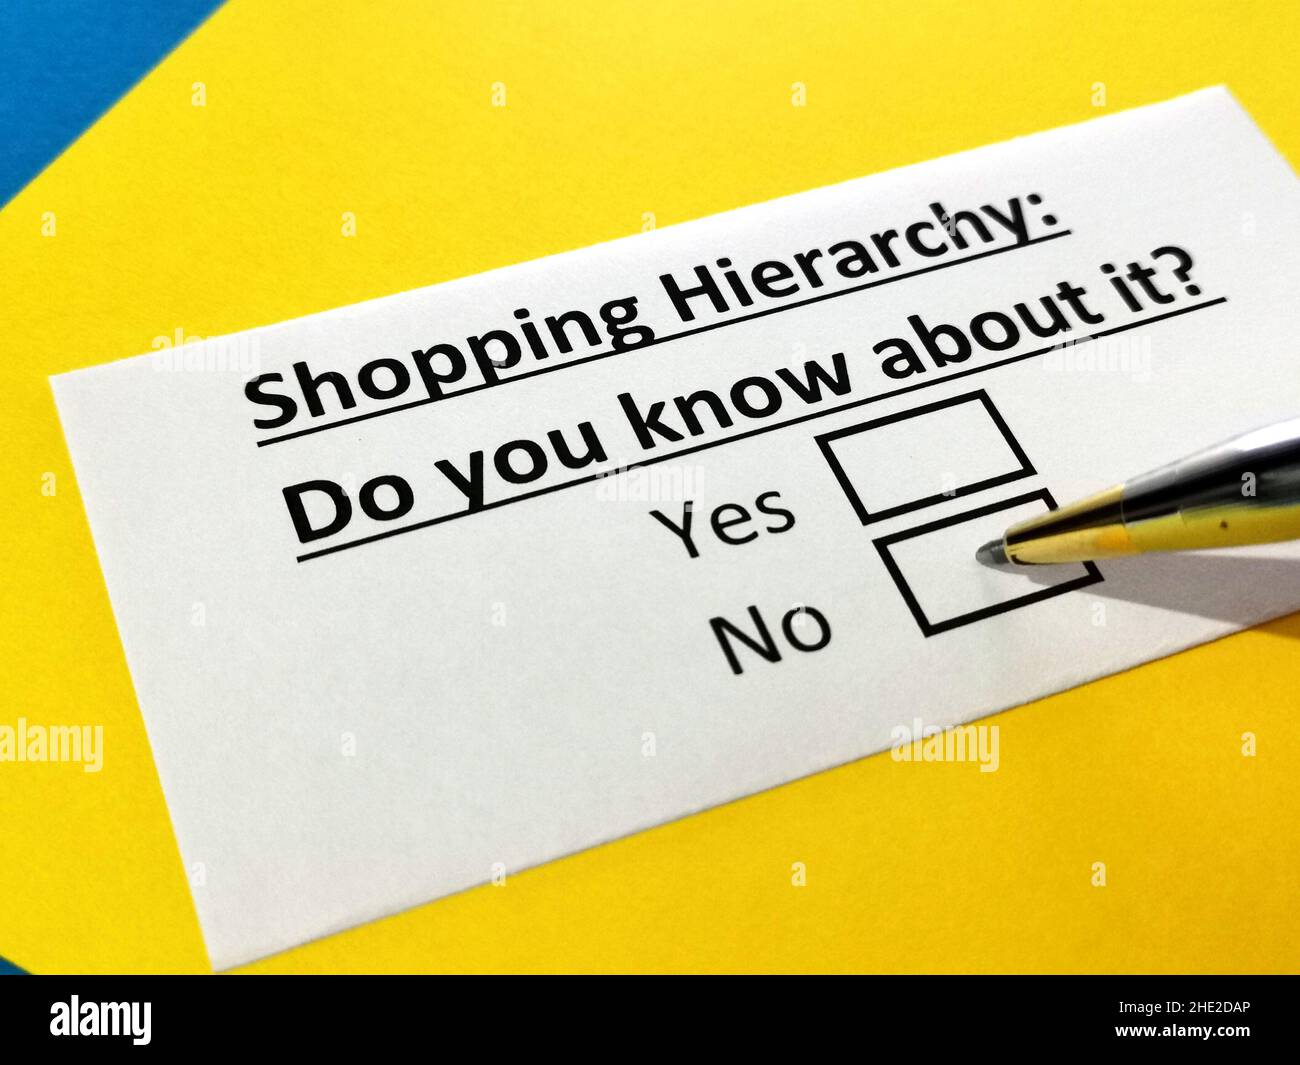 Eine Person beantwortet Fragen zur Einkaufshierarchie. Stockfoto